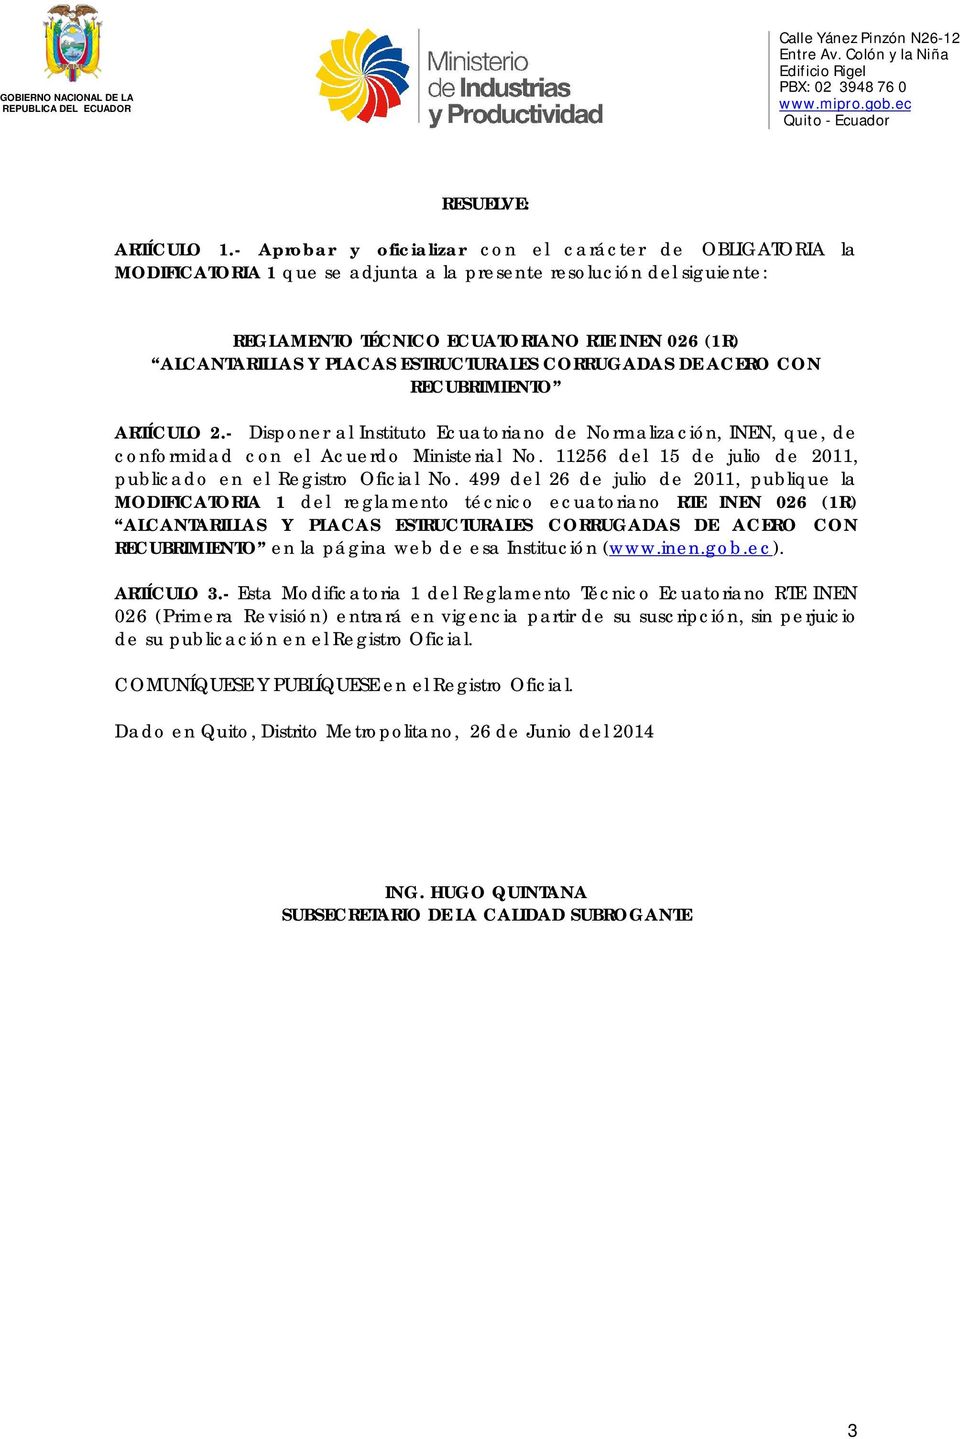 ARTÍCULO 2.- Disponer al Instituto Ecuatoriano de Normalización, INEN, que, de conformidad con el Acuerdo Ministerial No. 11256 del 15 de julio de 2011, publicado en el Registro Oficial No.